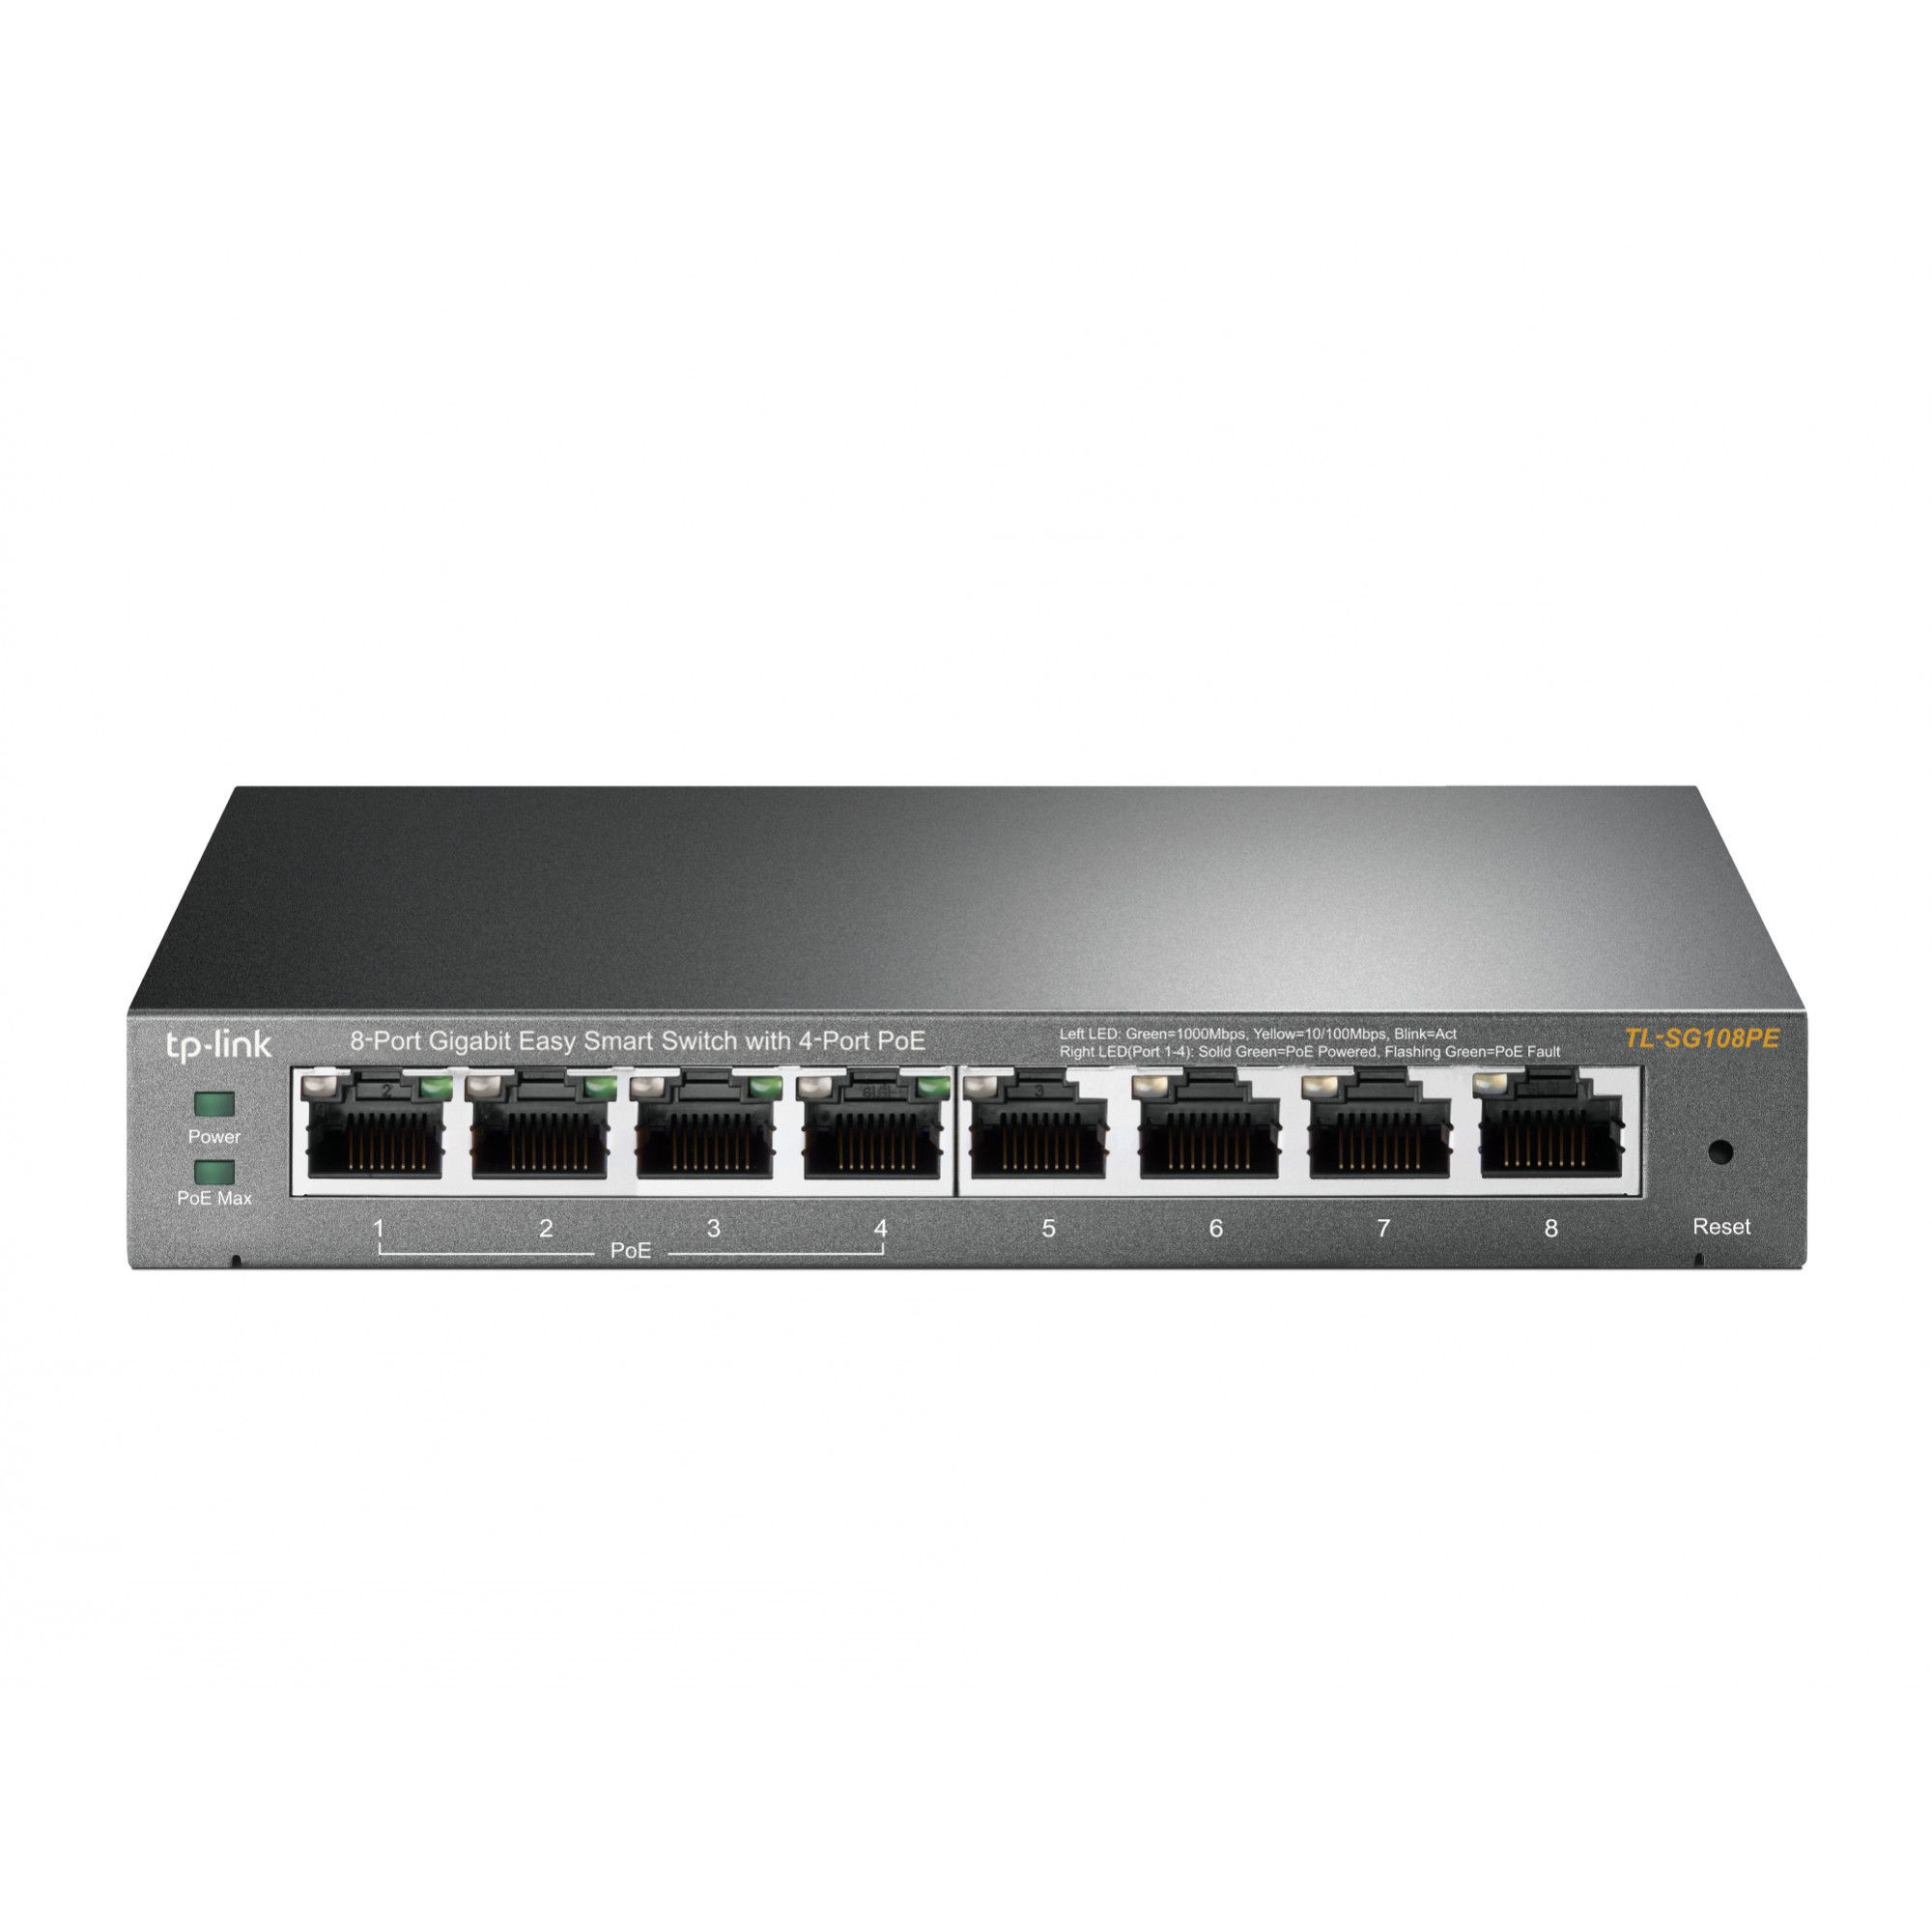 Switch TP-LINK TL-SG108PE, 8 port, 10/100/1000 Mbps_2